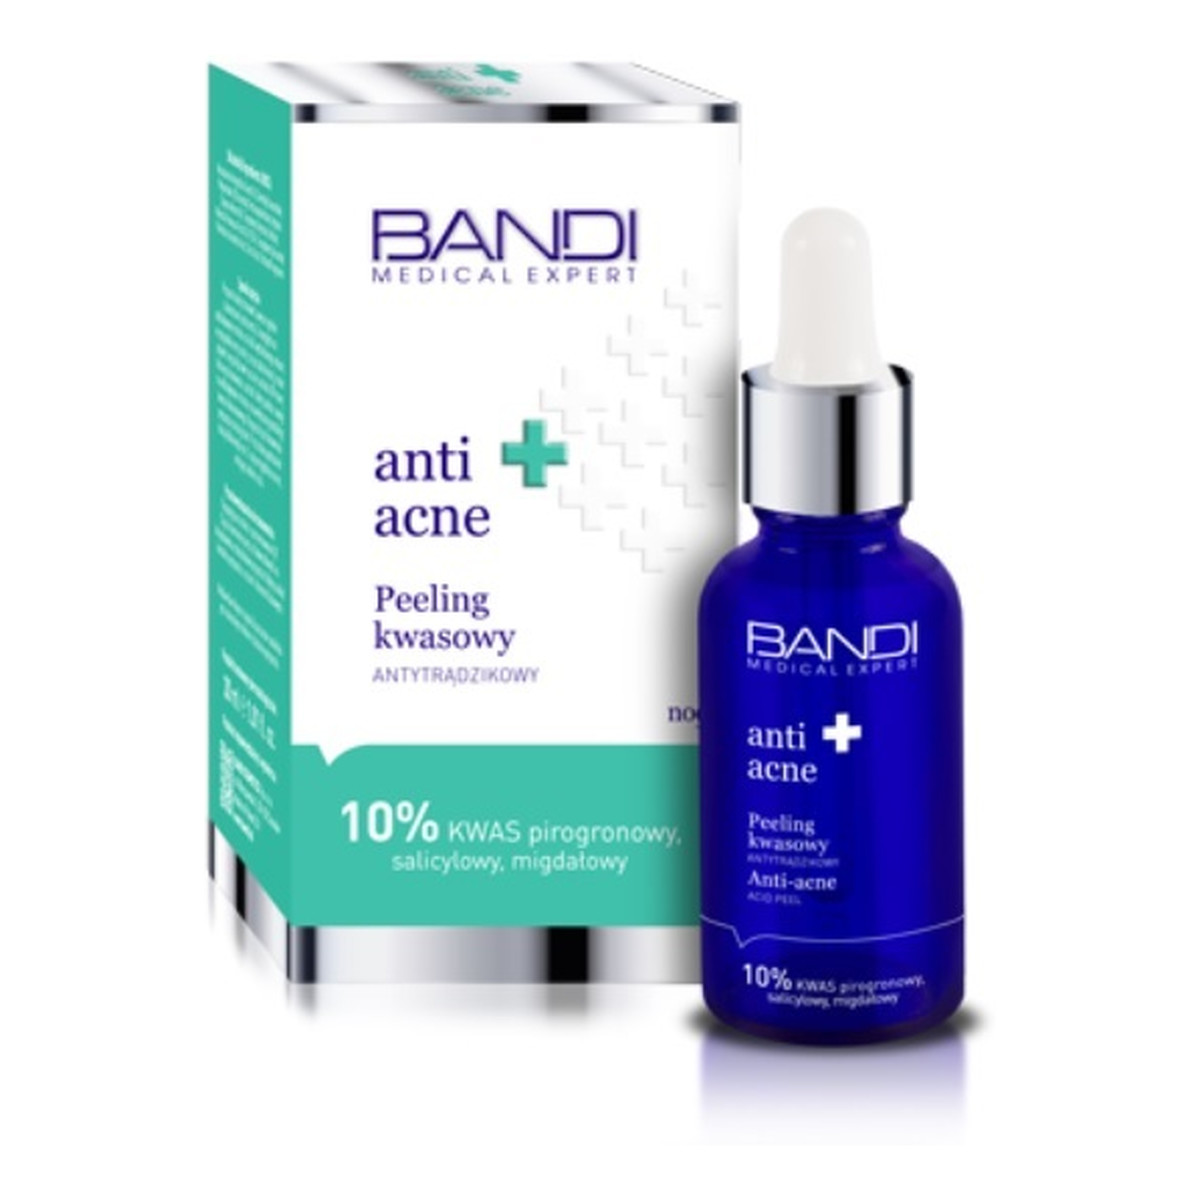 Bandi Medical Anti Acne Peeling kwasowy antytrądzikowy